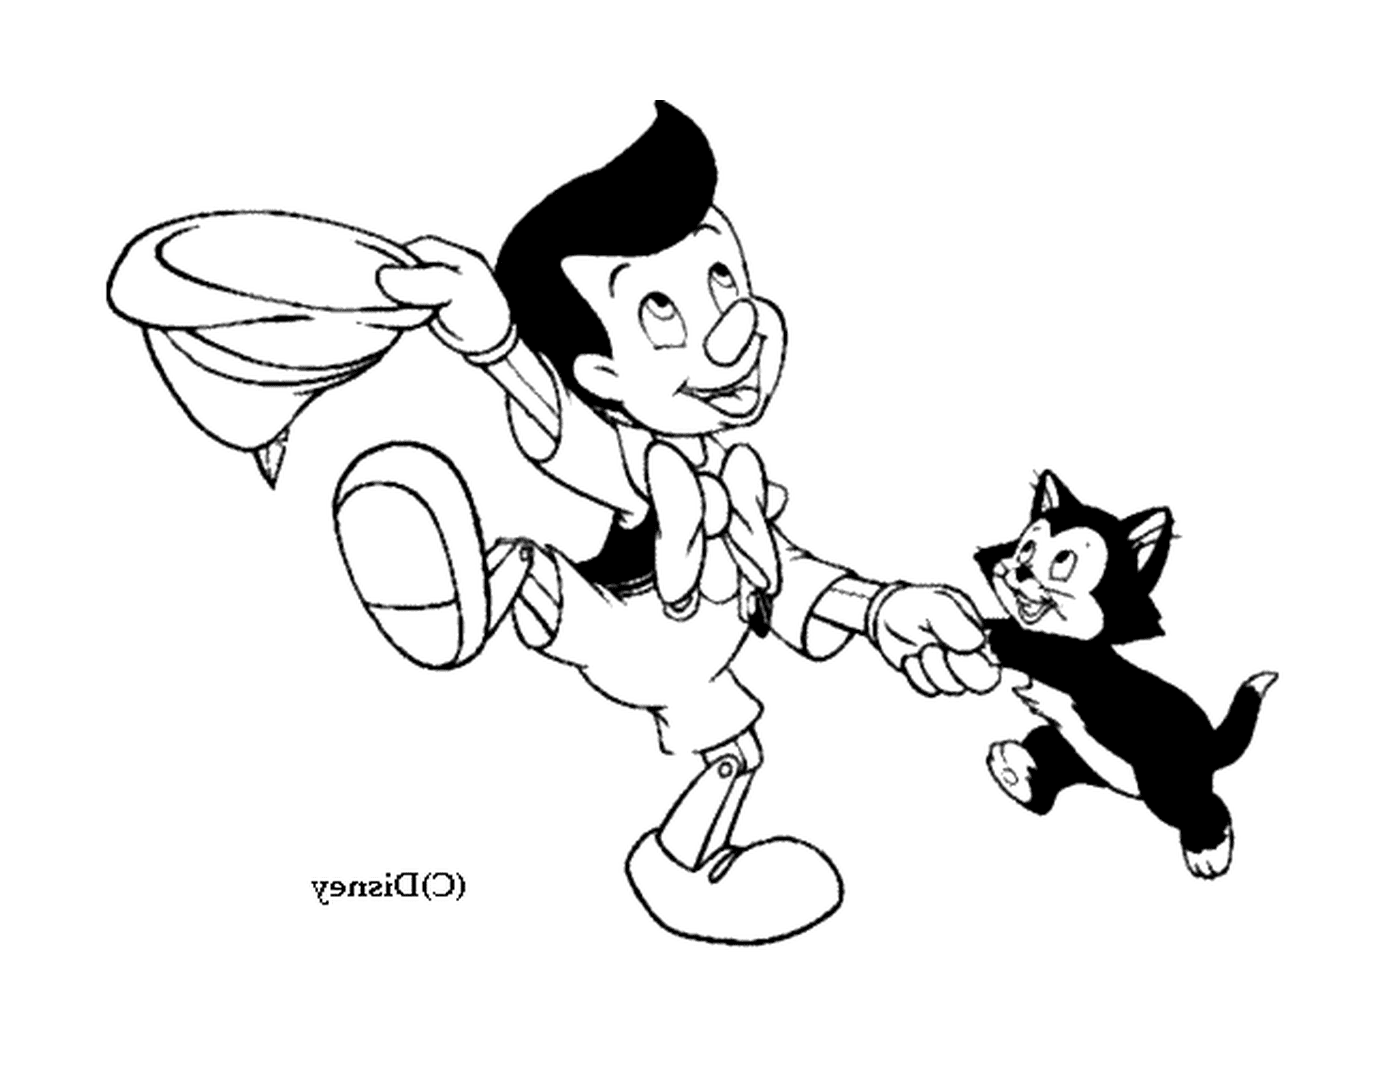  Пиноккио играет с котом 